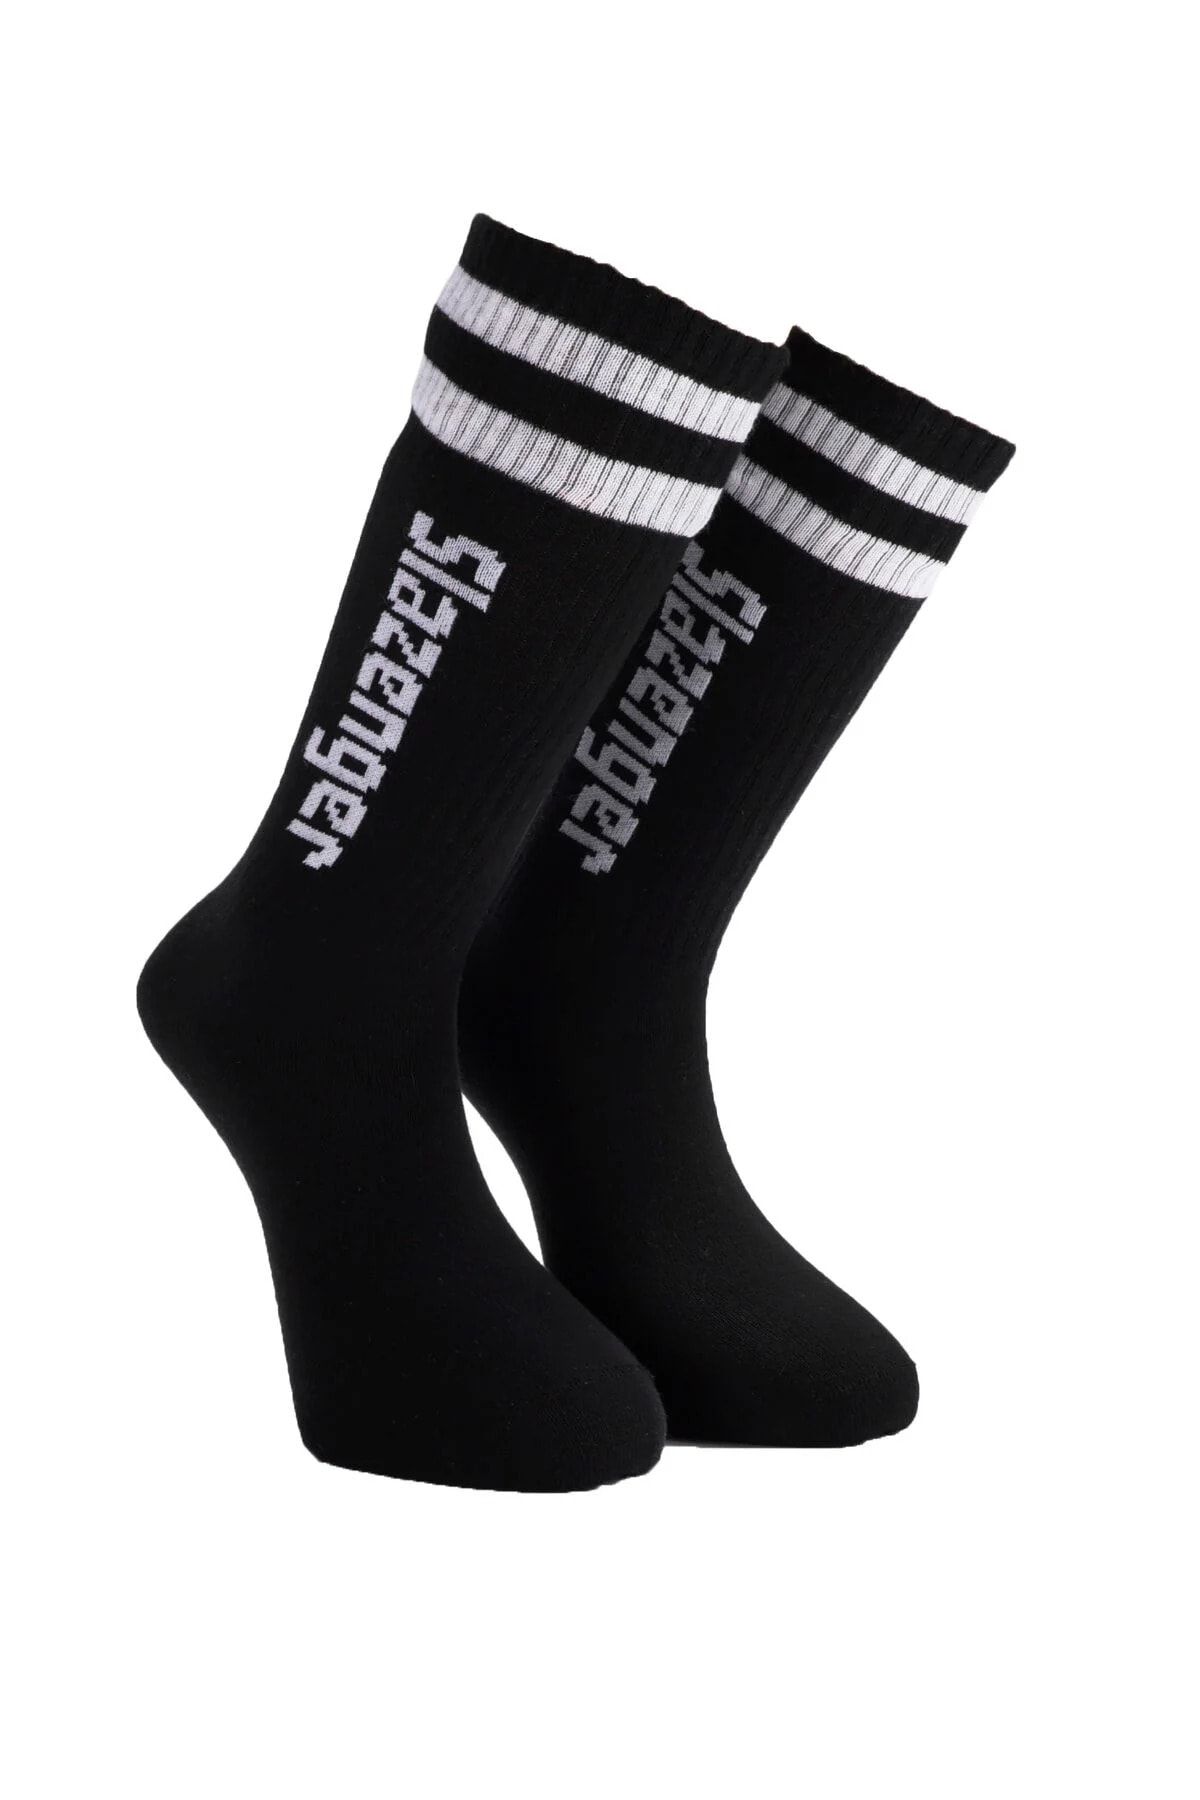 Slazenger Jinn Erkek Spor Çorap 40-44 Siyah Renk 3 Lü Set